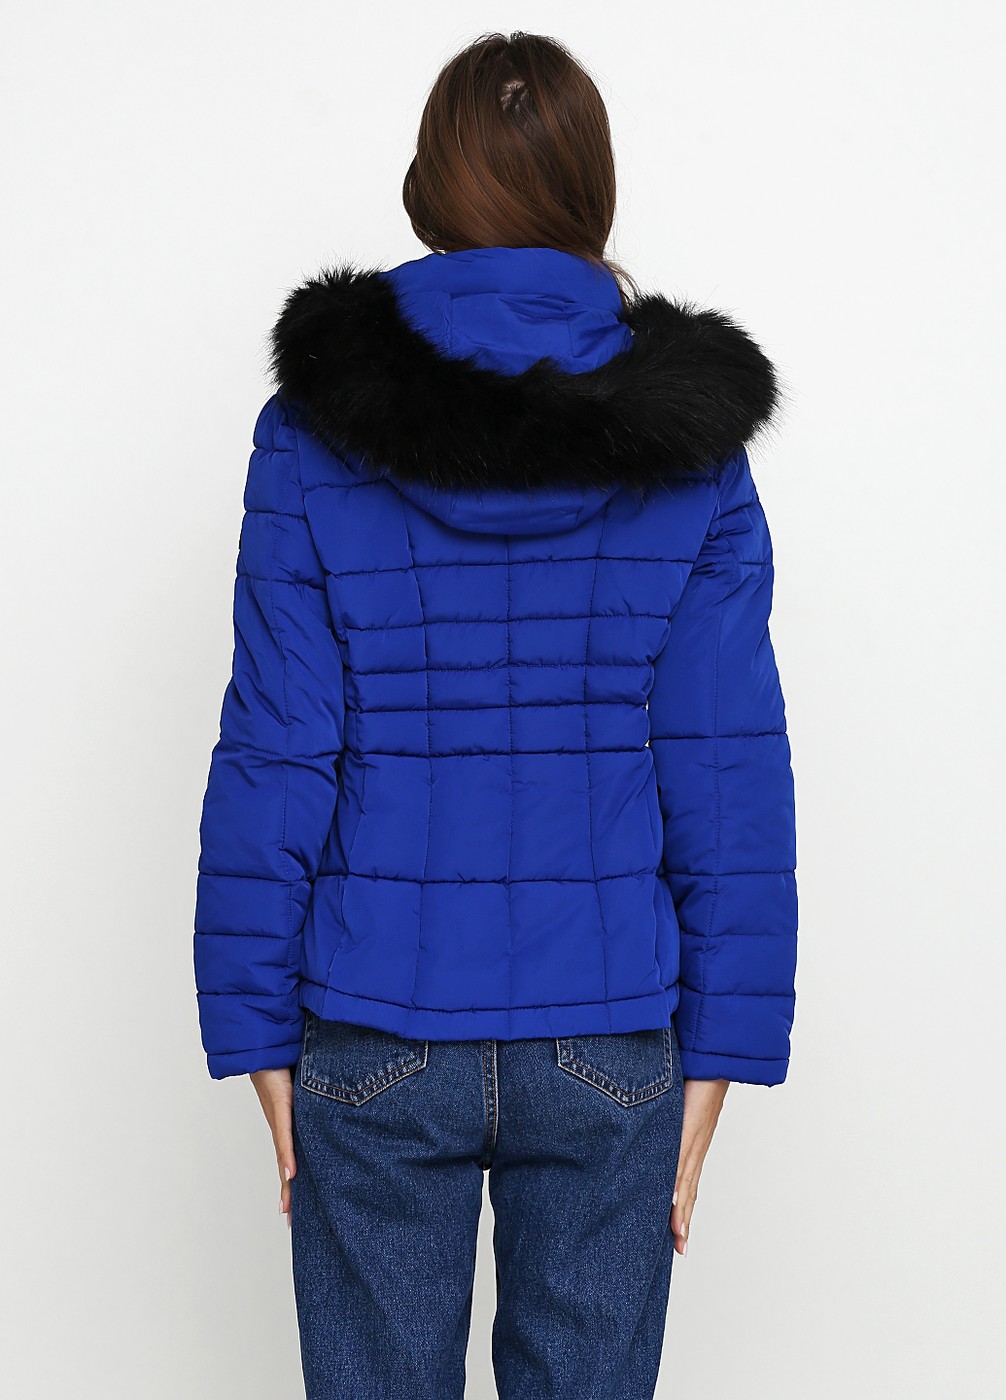 Куртка демисезонная - женская куртка Calvin Klein